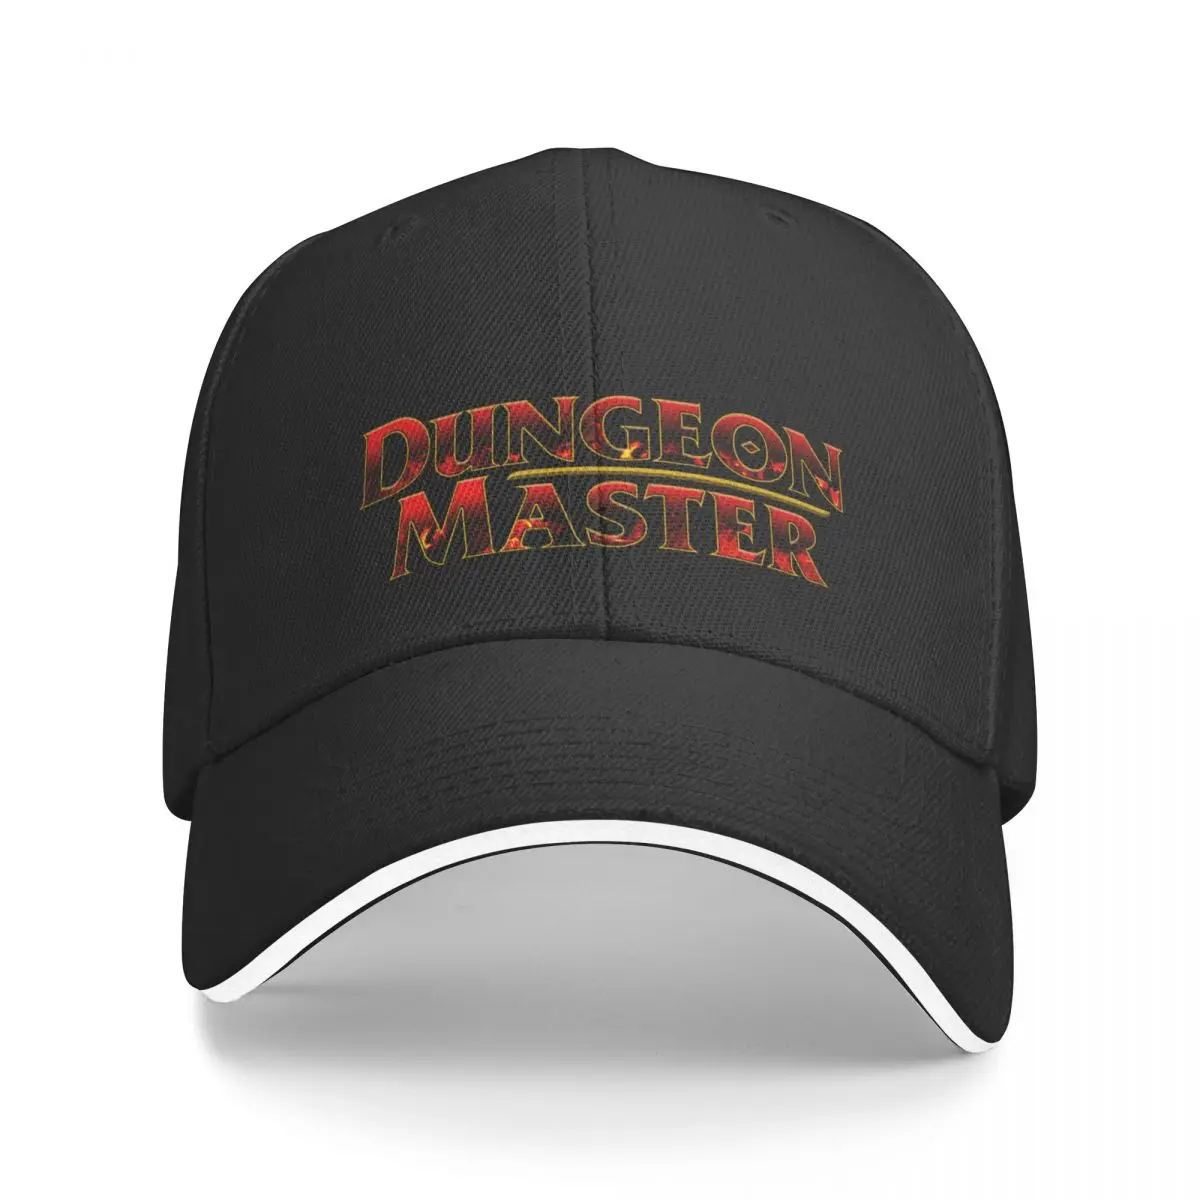 D & D Dungeon Master Flame Дизайн Бейсболки солнцезащитная шляпа Роскошная Мужская шляпа Роскошная Кепка Мужские шляпы Женские